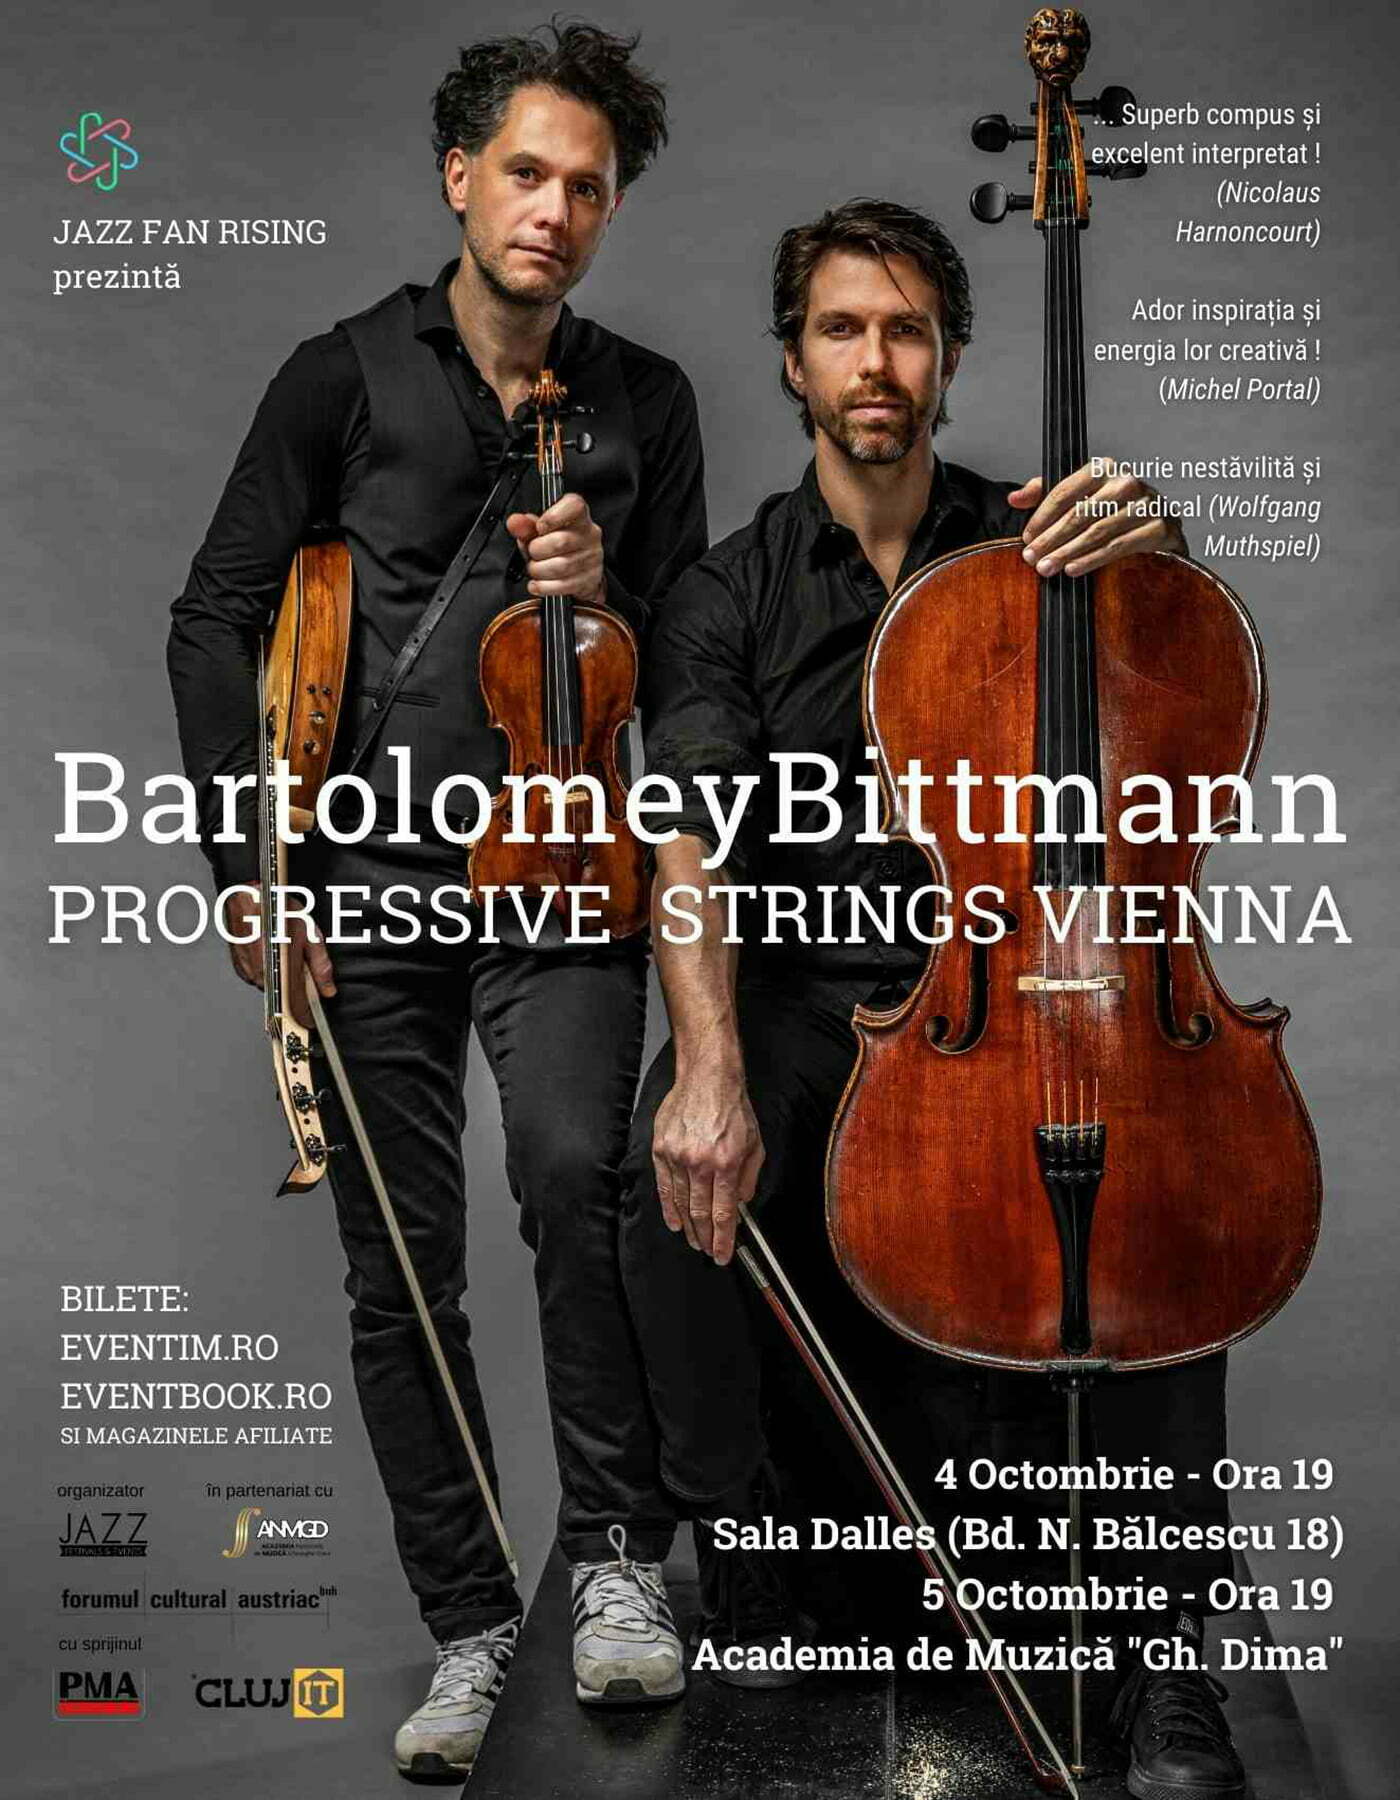 Progressive strings